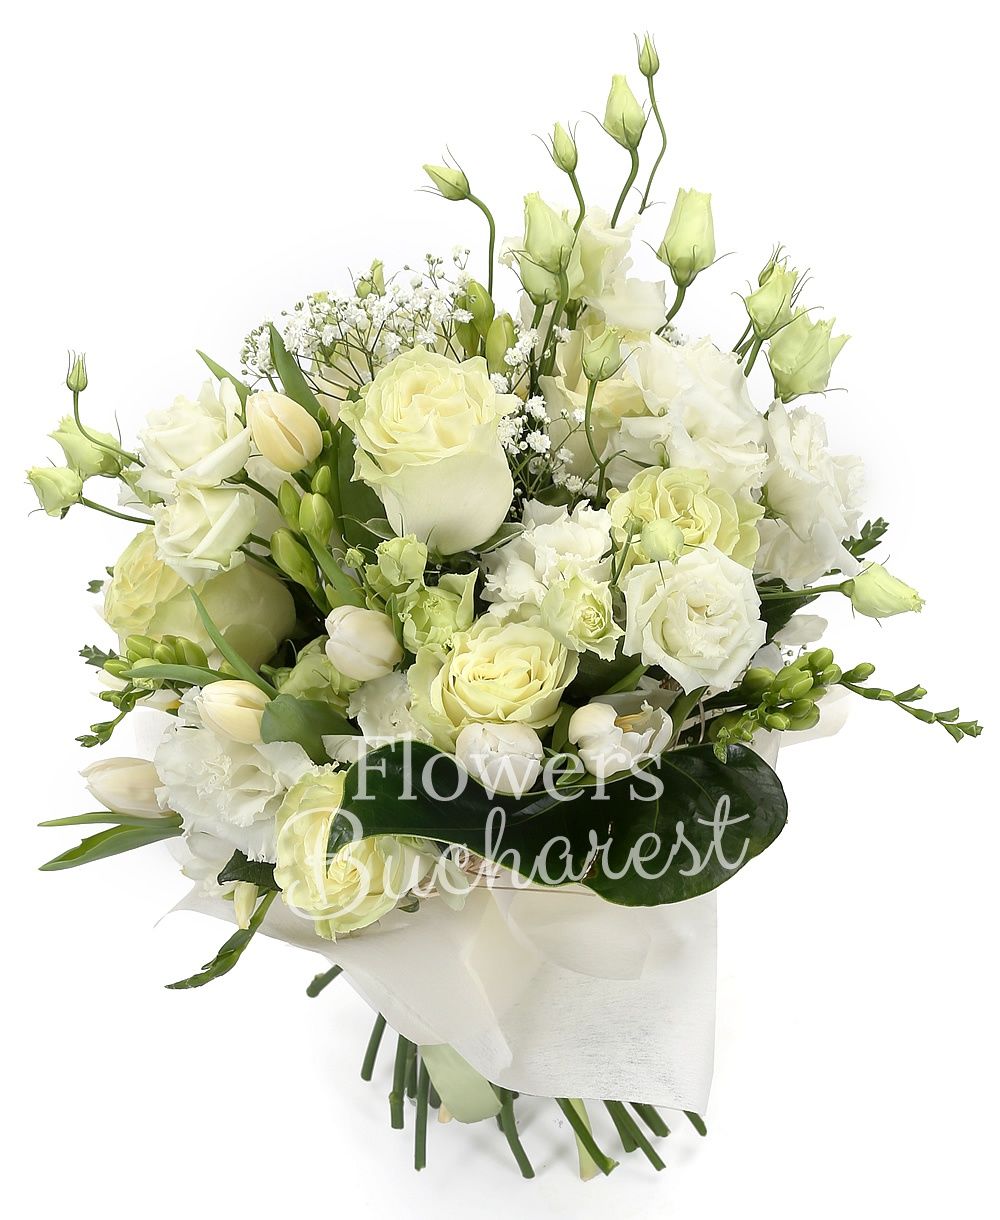 9 white roses, 5 white lisianthus, 10 white tulips, 10 white freesias, greenery